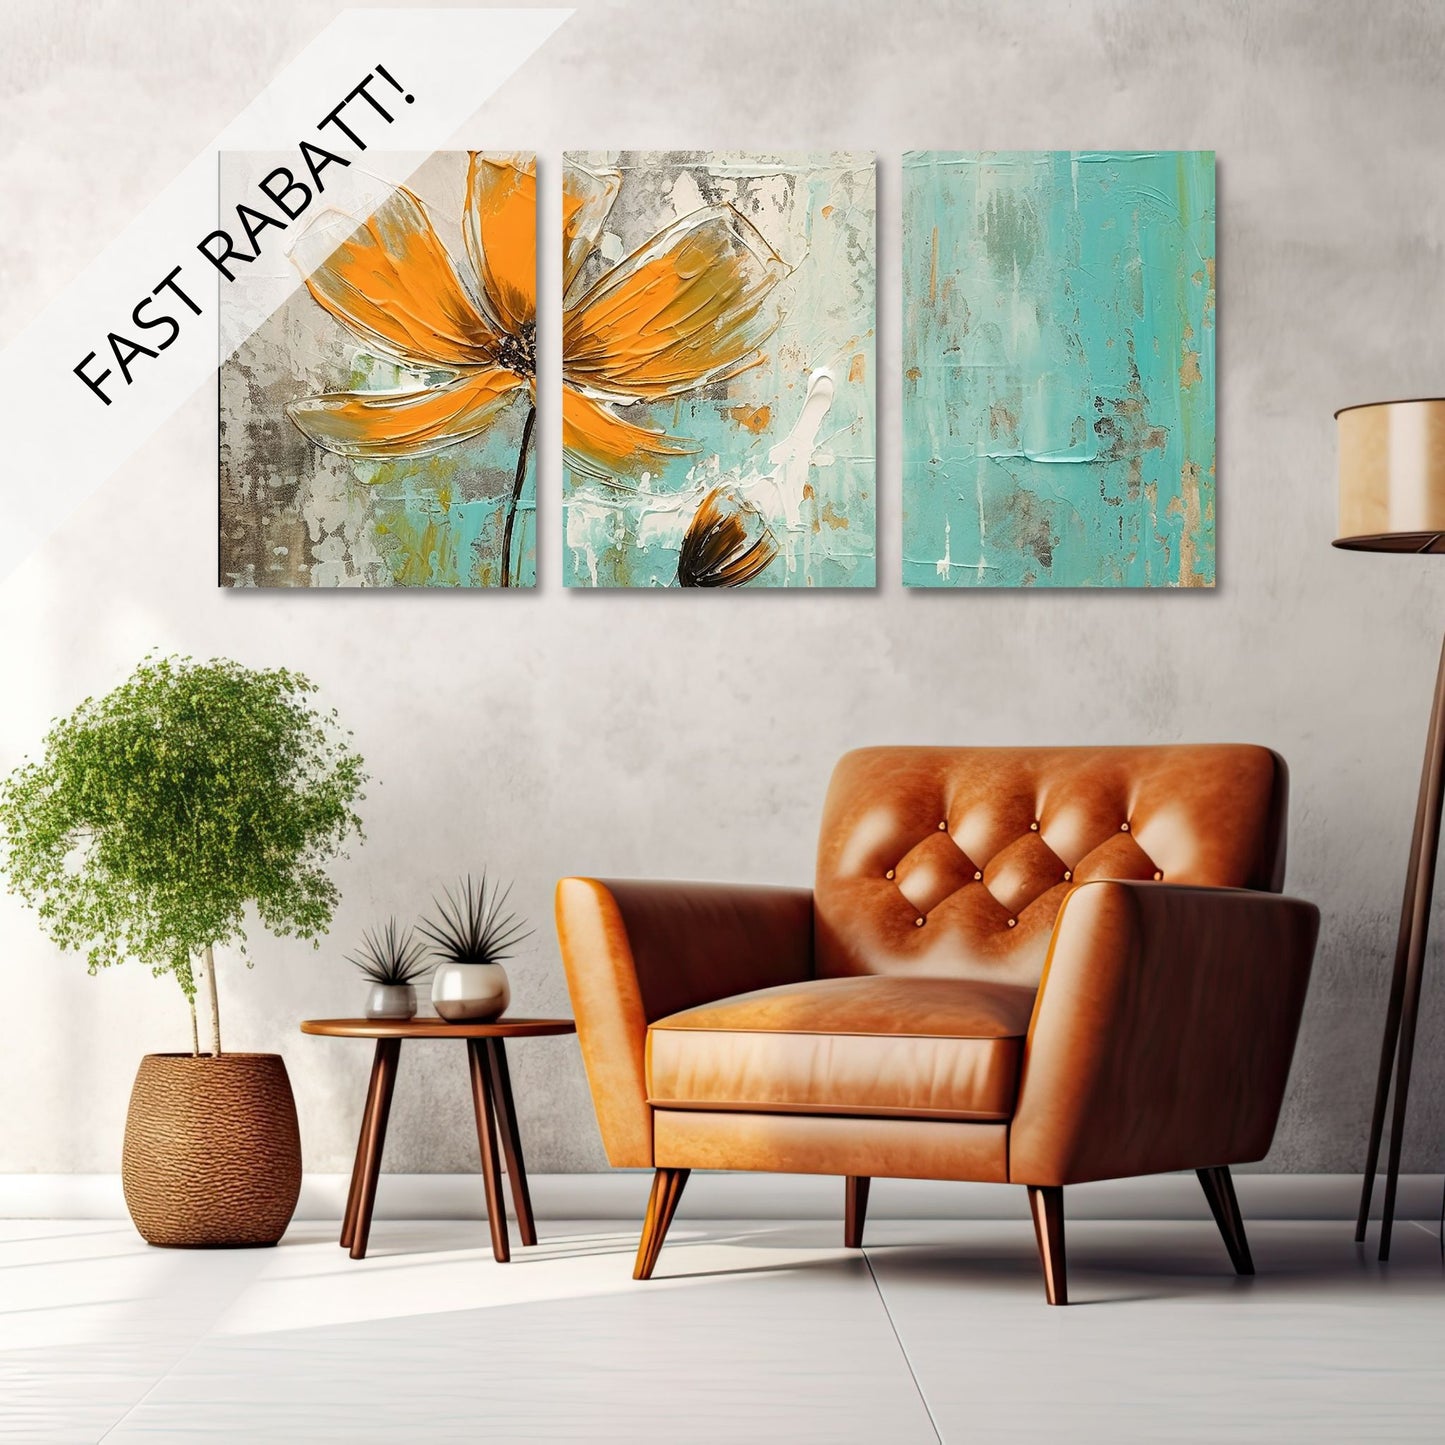 Abstrakt maleri som består av 3 stk. grafiske print på lerret. Motivet består av oransje blomster som danser på en beroligende bakgrunn av brunt,  beige og turkis.. Illustrasjonen viser de tre lerretsbildene på en vegg over en brun skinnstol.